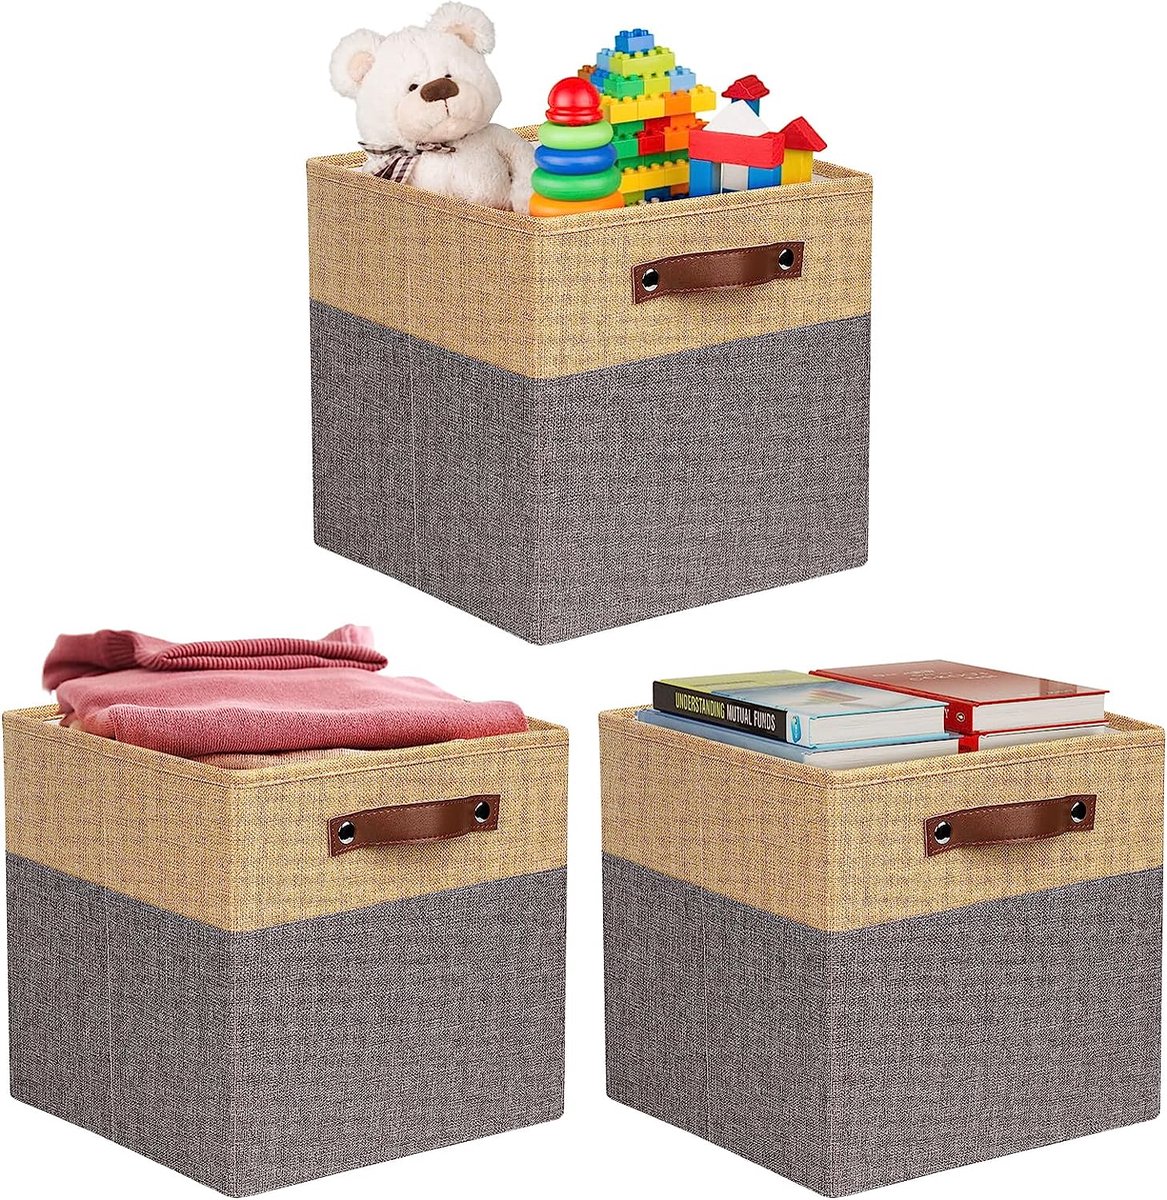 3 stuks opvouwbare opbergdozen, 30 x 30 x 30 cm, opbergdozen met handvat, vouwbox voor rek, opbergkist van stof voor speelgoed, kleding, boeken (grijs/beige)